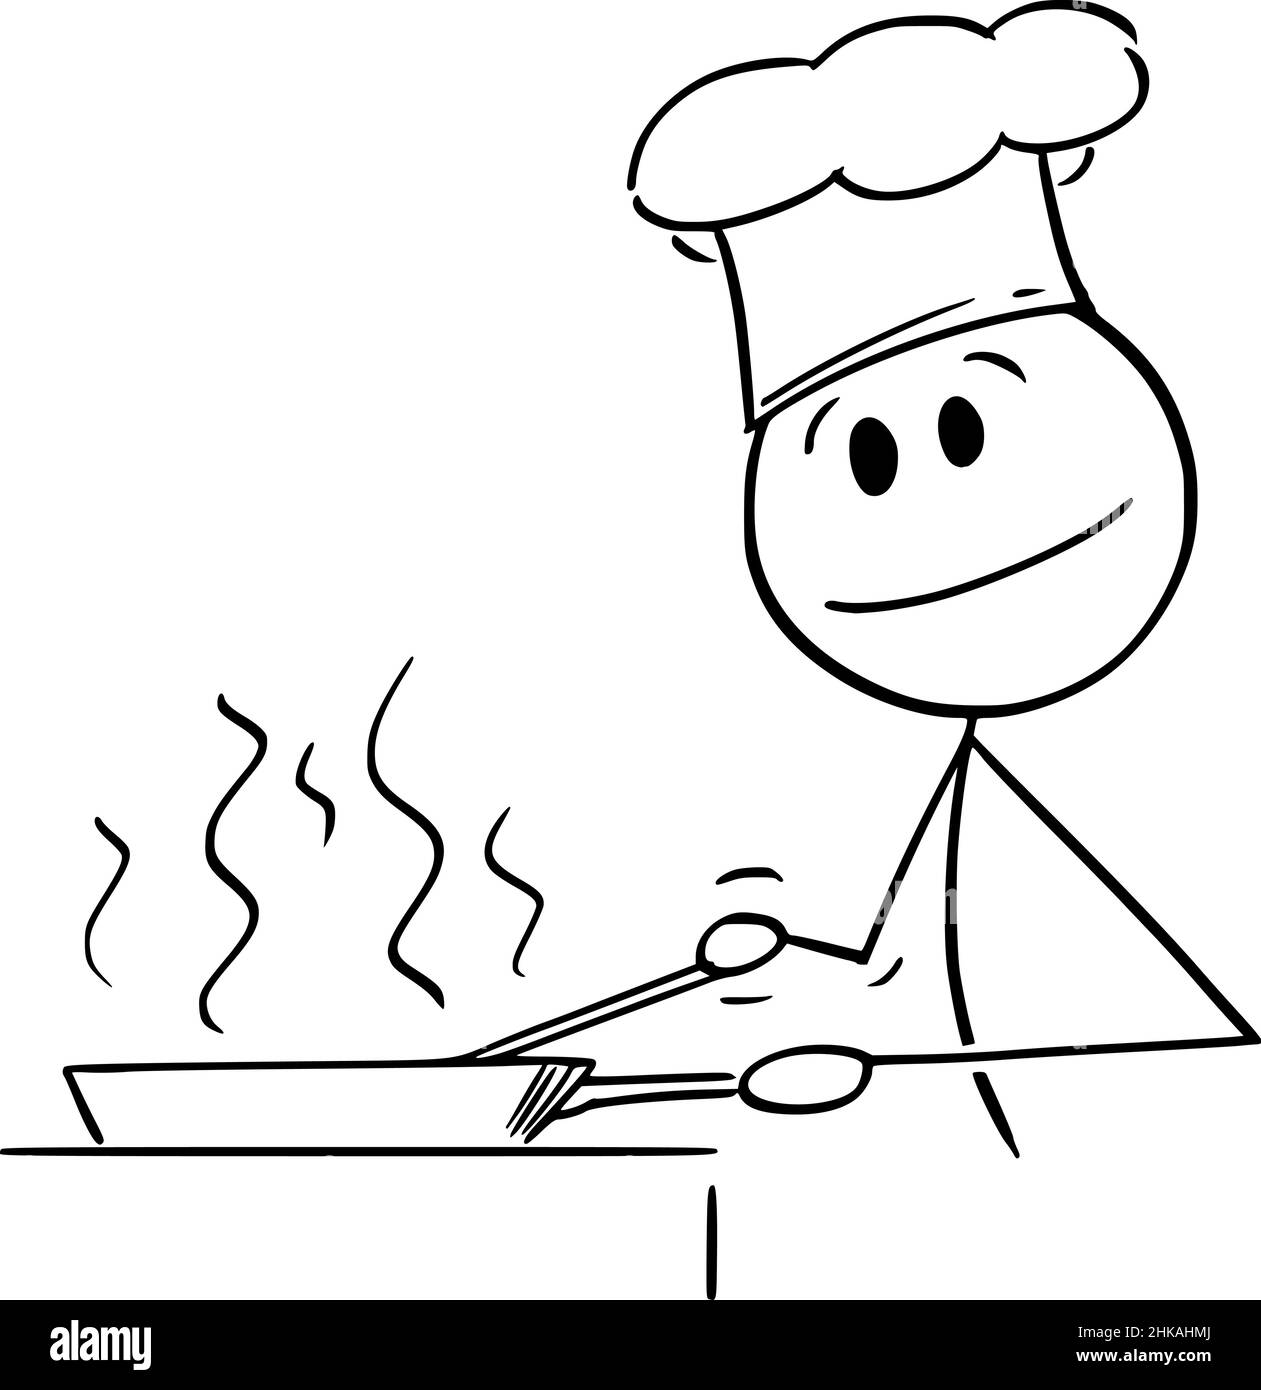 Cook Cooking Food in Frying Pan, Vector Cartoon Stick Figure Illustration Stock Vector